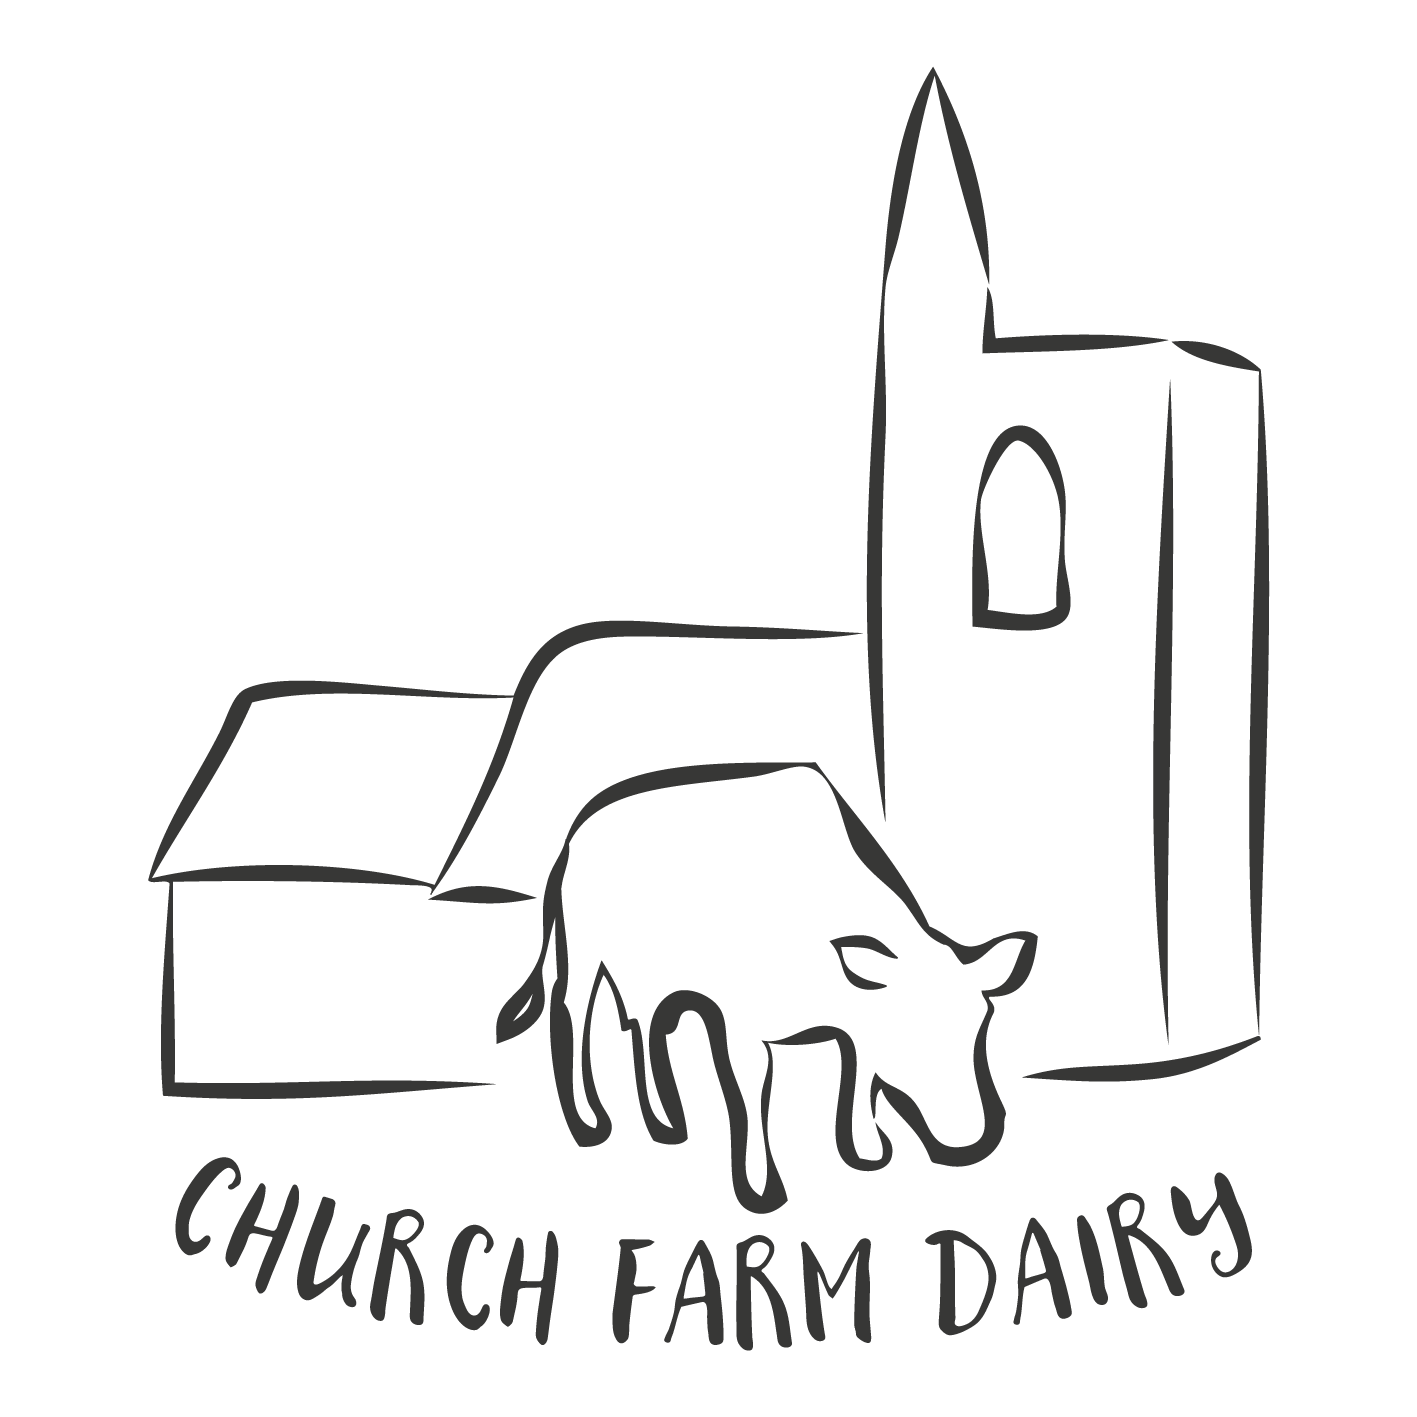 Church Farm Dairy